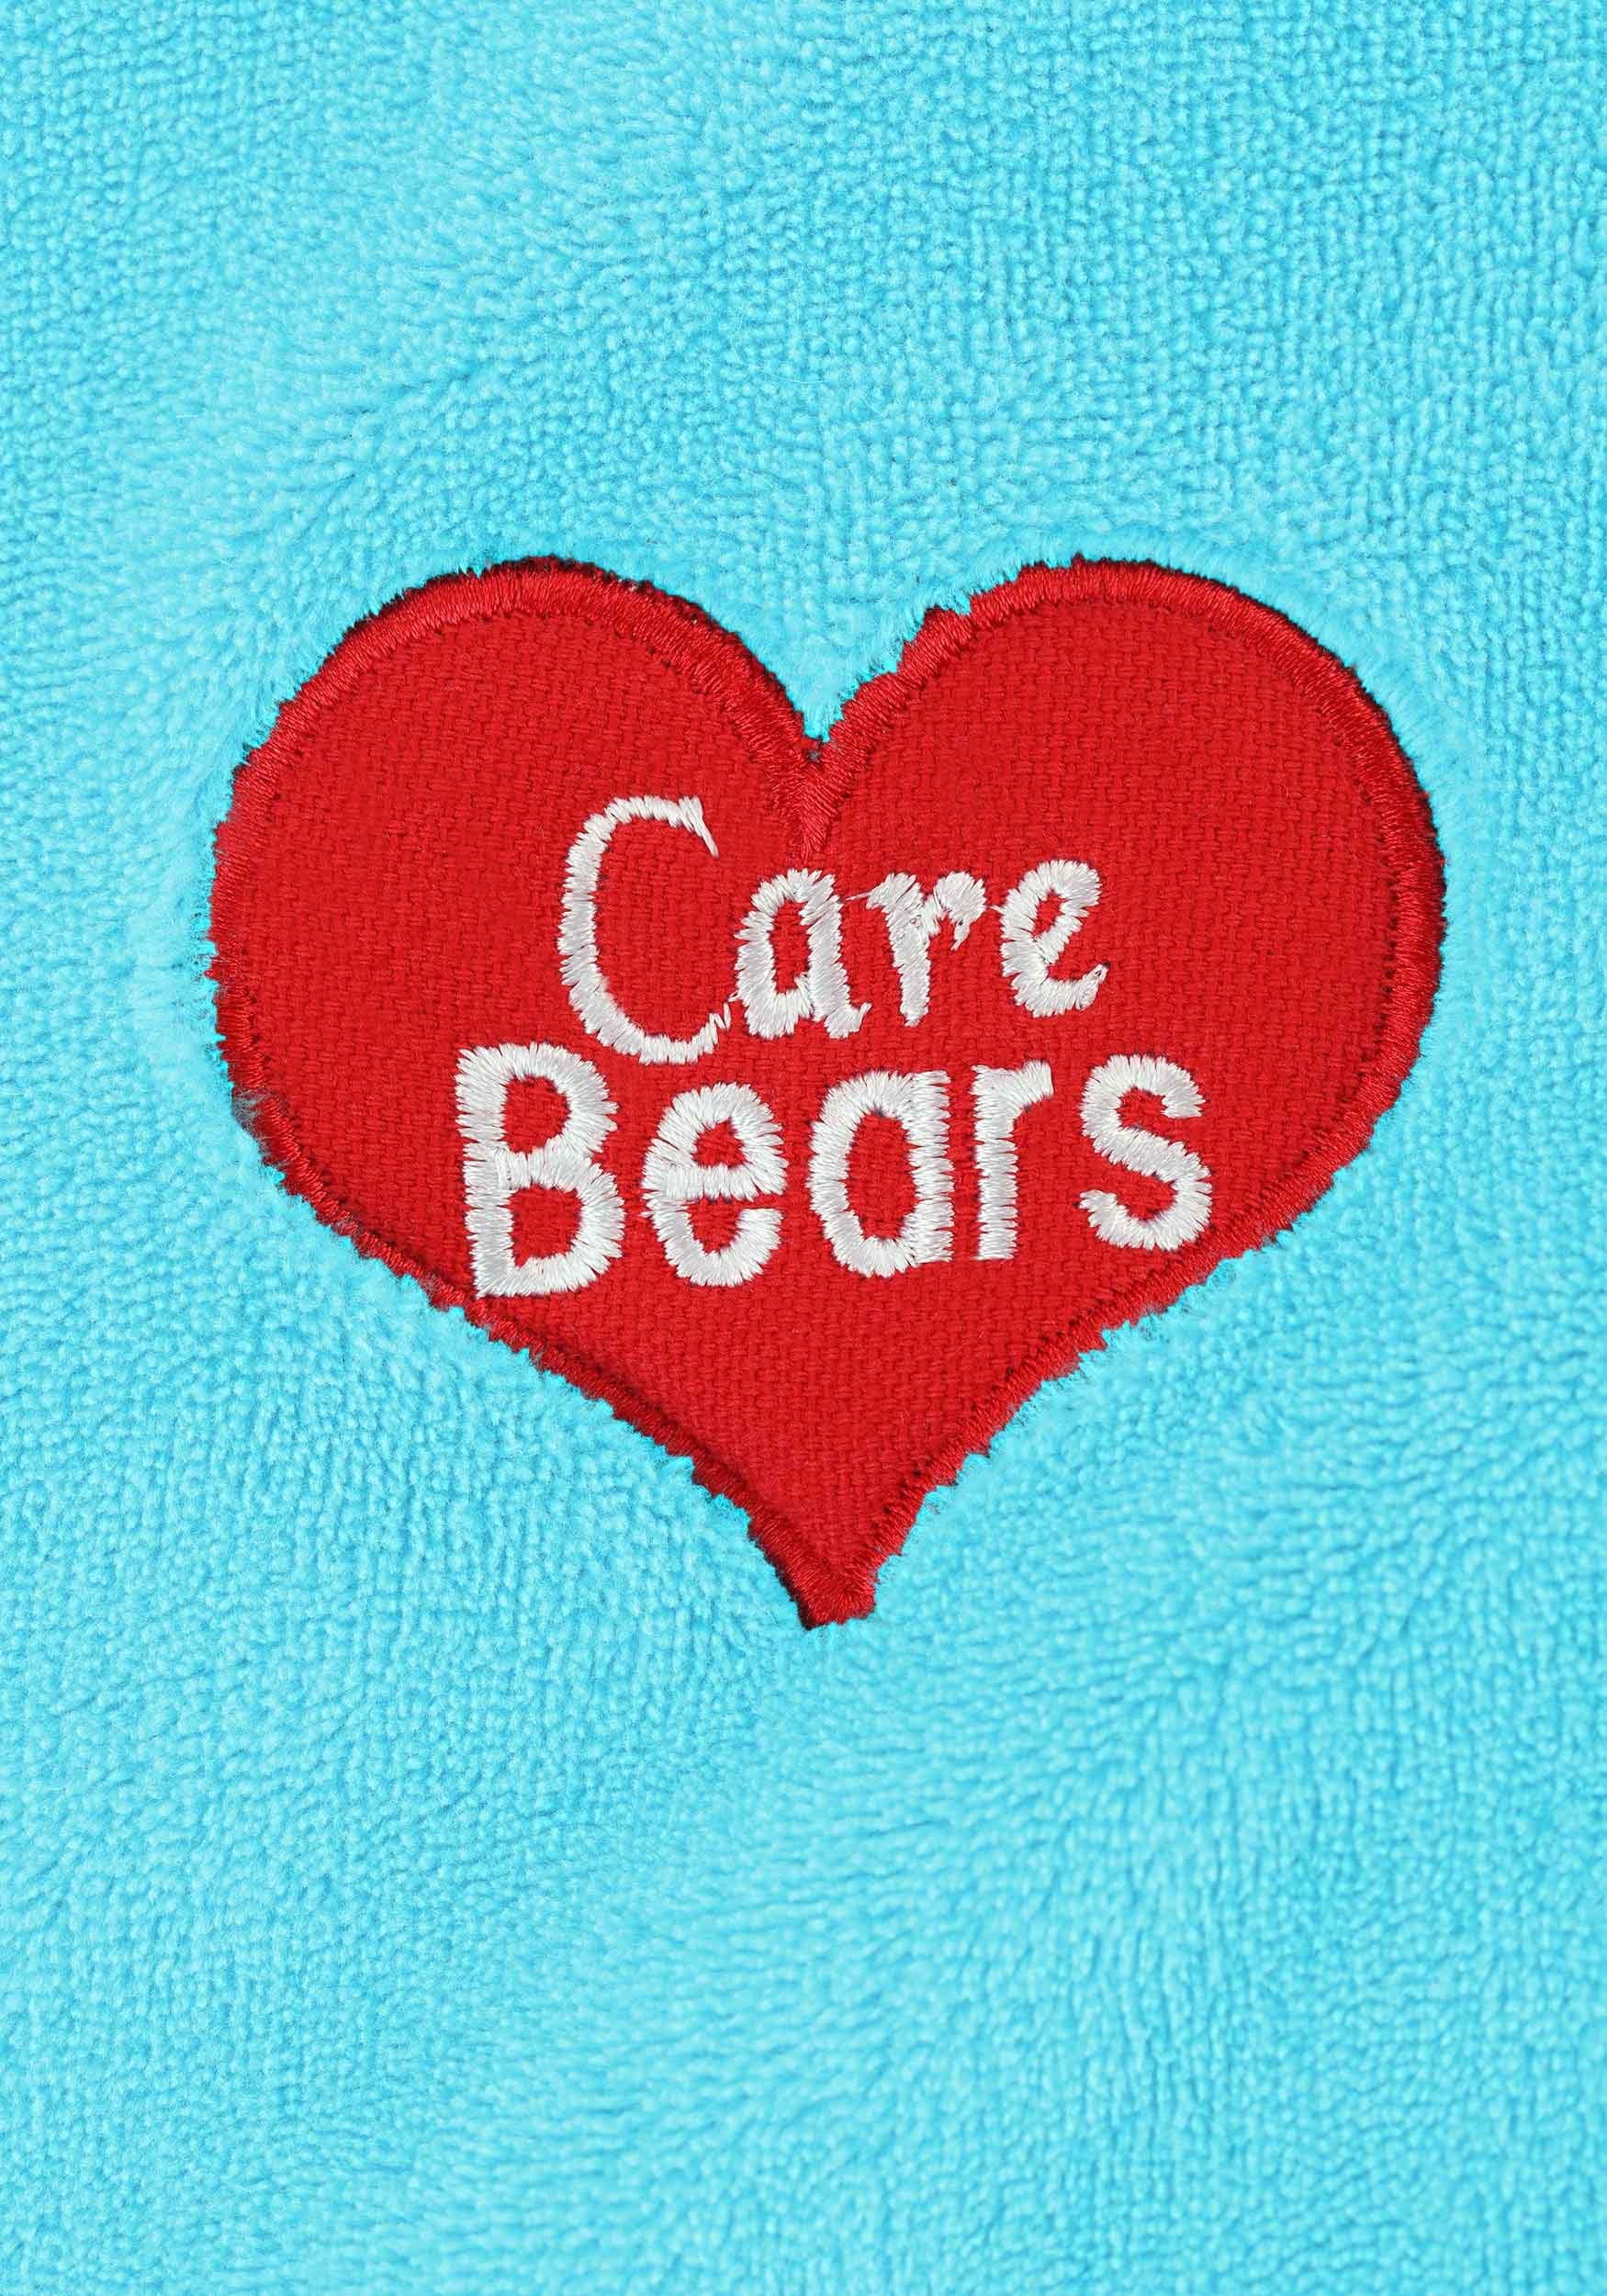 Care Bears Bedtime Bear Kid's Sleeping Bag , Care Bears Bedding & Living